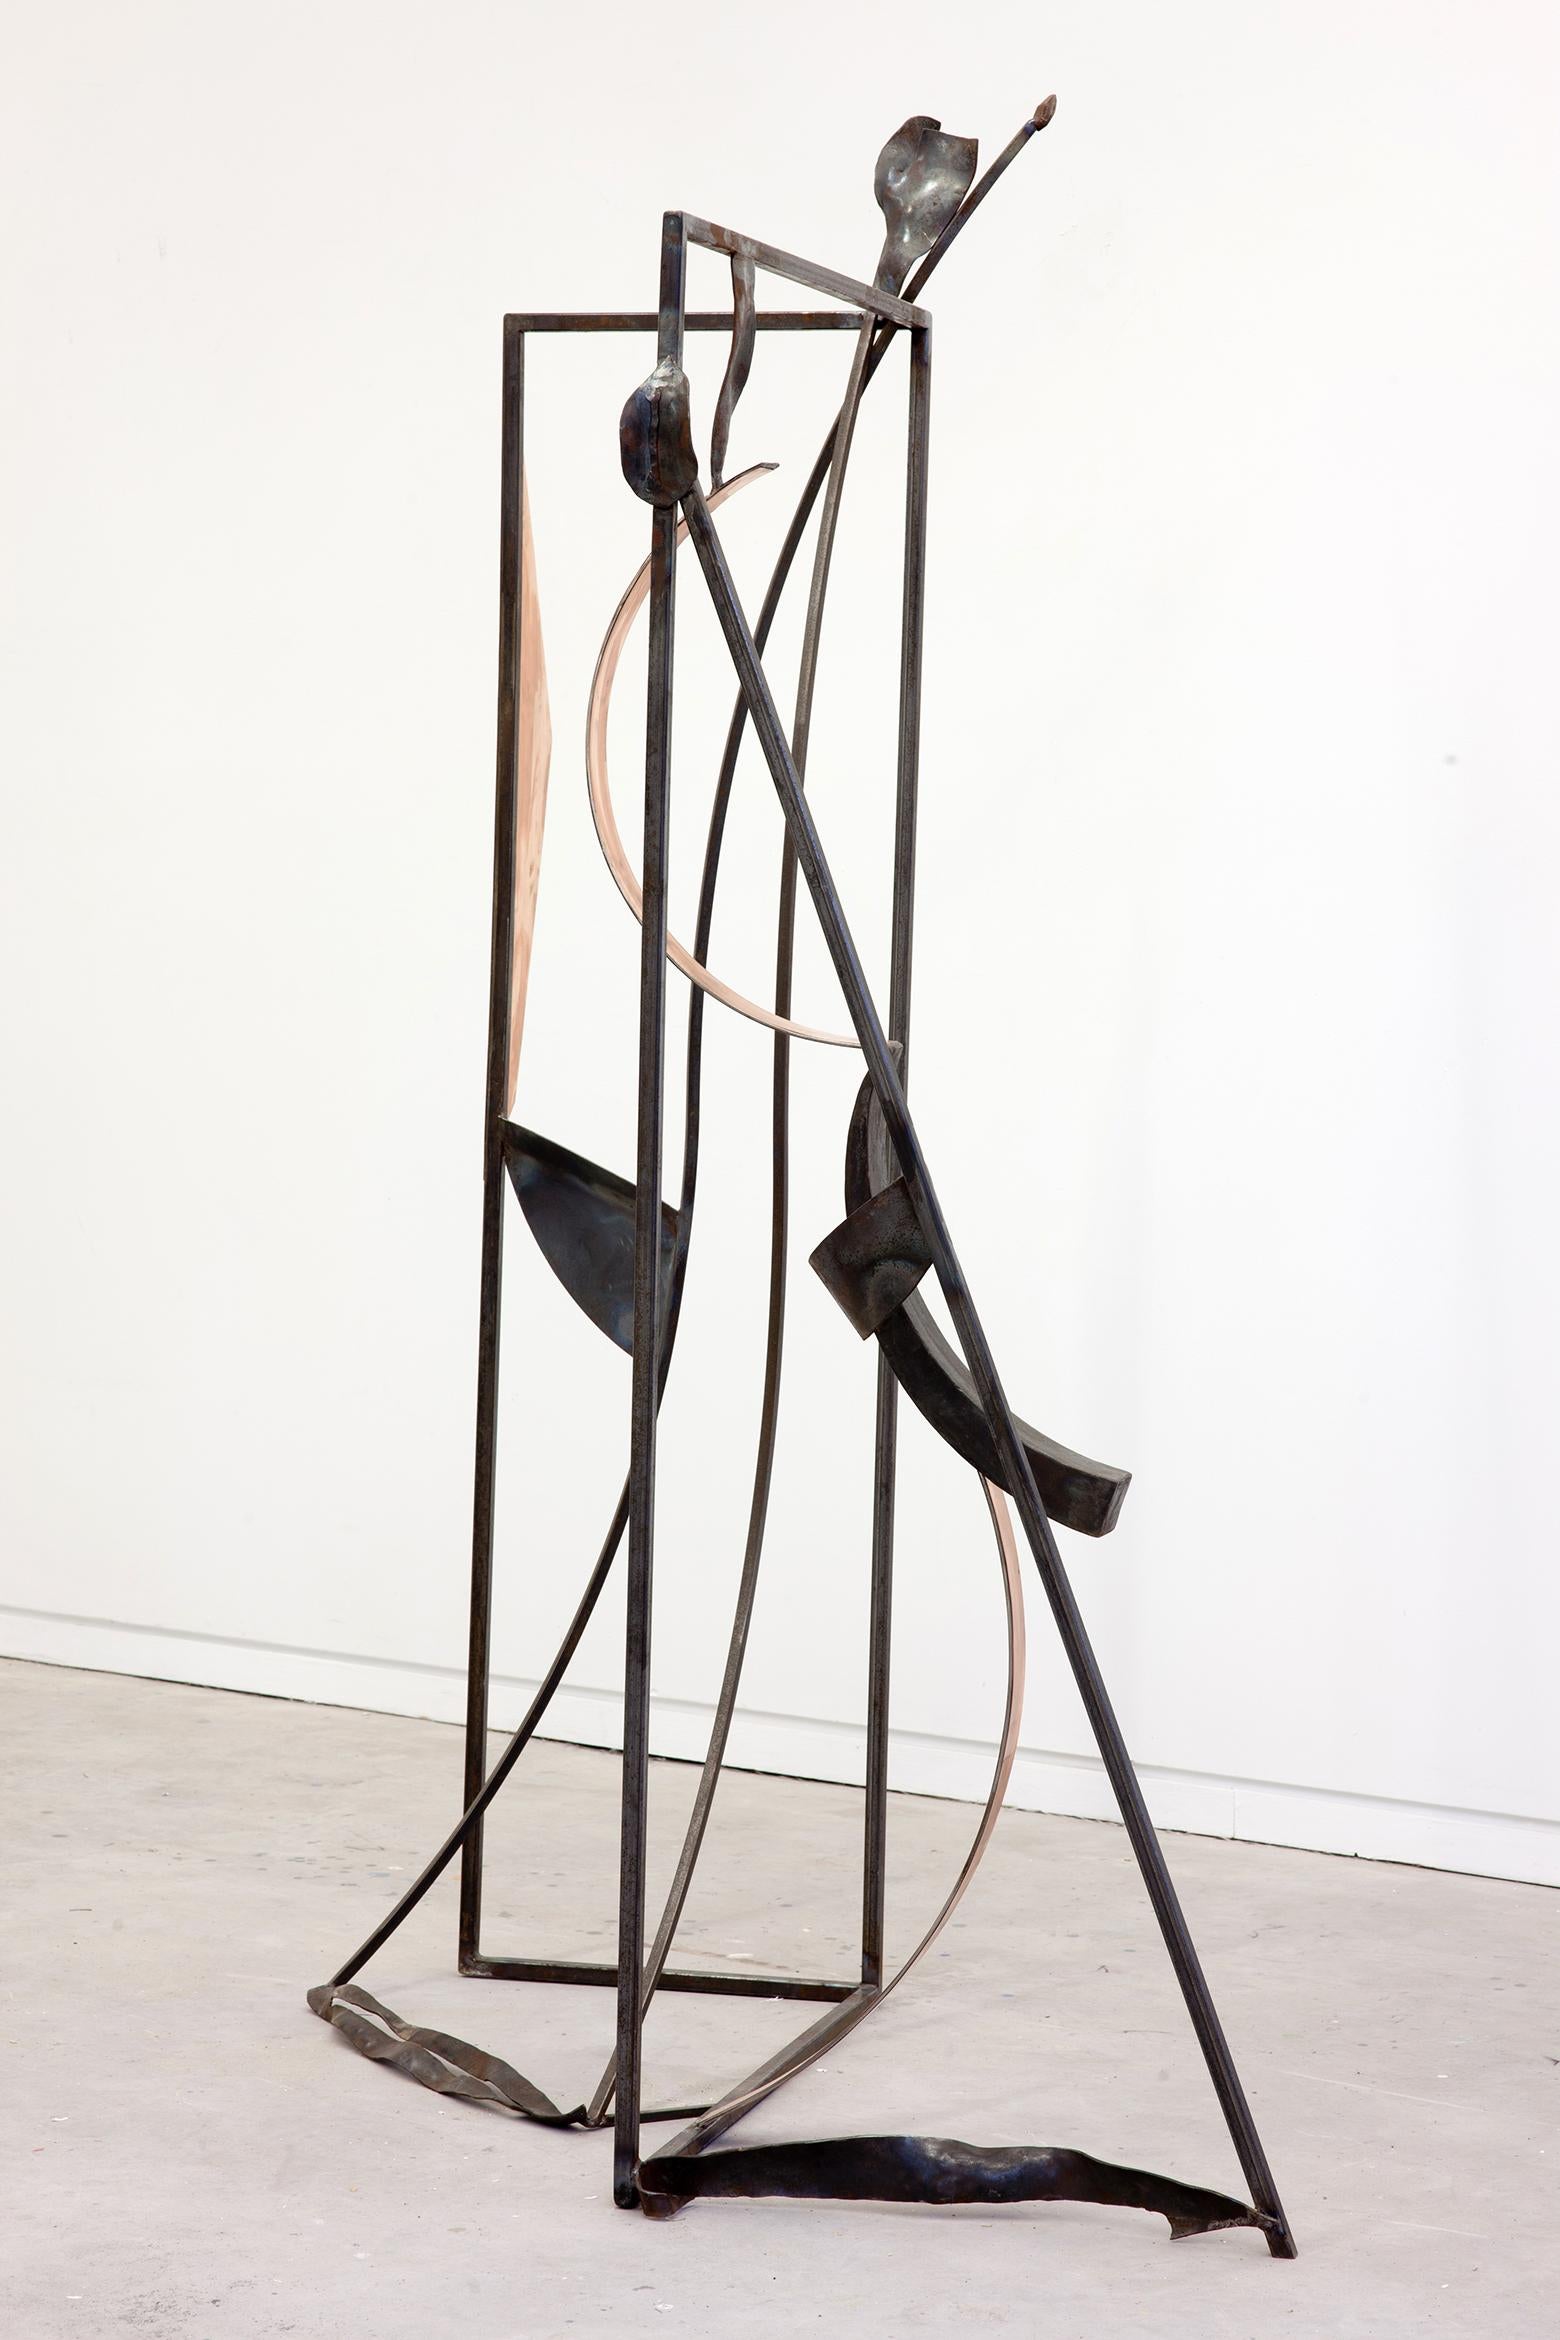 In den 1960er Jahren war der Kanadier Otto Rogers einer der ersten Künstler, der abstrakte Skulpturen aus geschweißtem Stahl schuf und dies während seiner langen Karriere fortsetzte. Die eleganten Kurven und die markante Form dieses Stücks aus Stahl